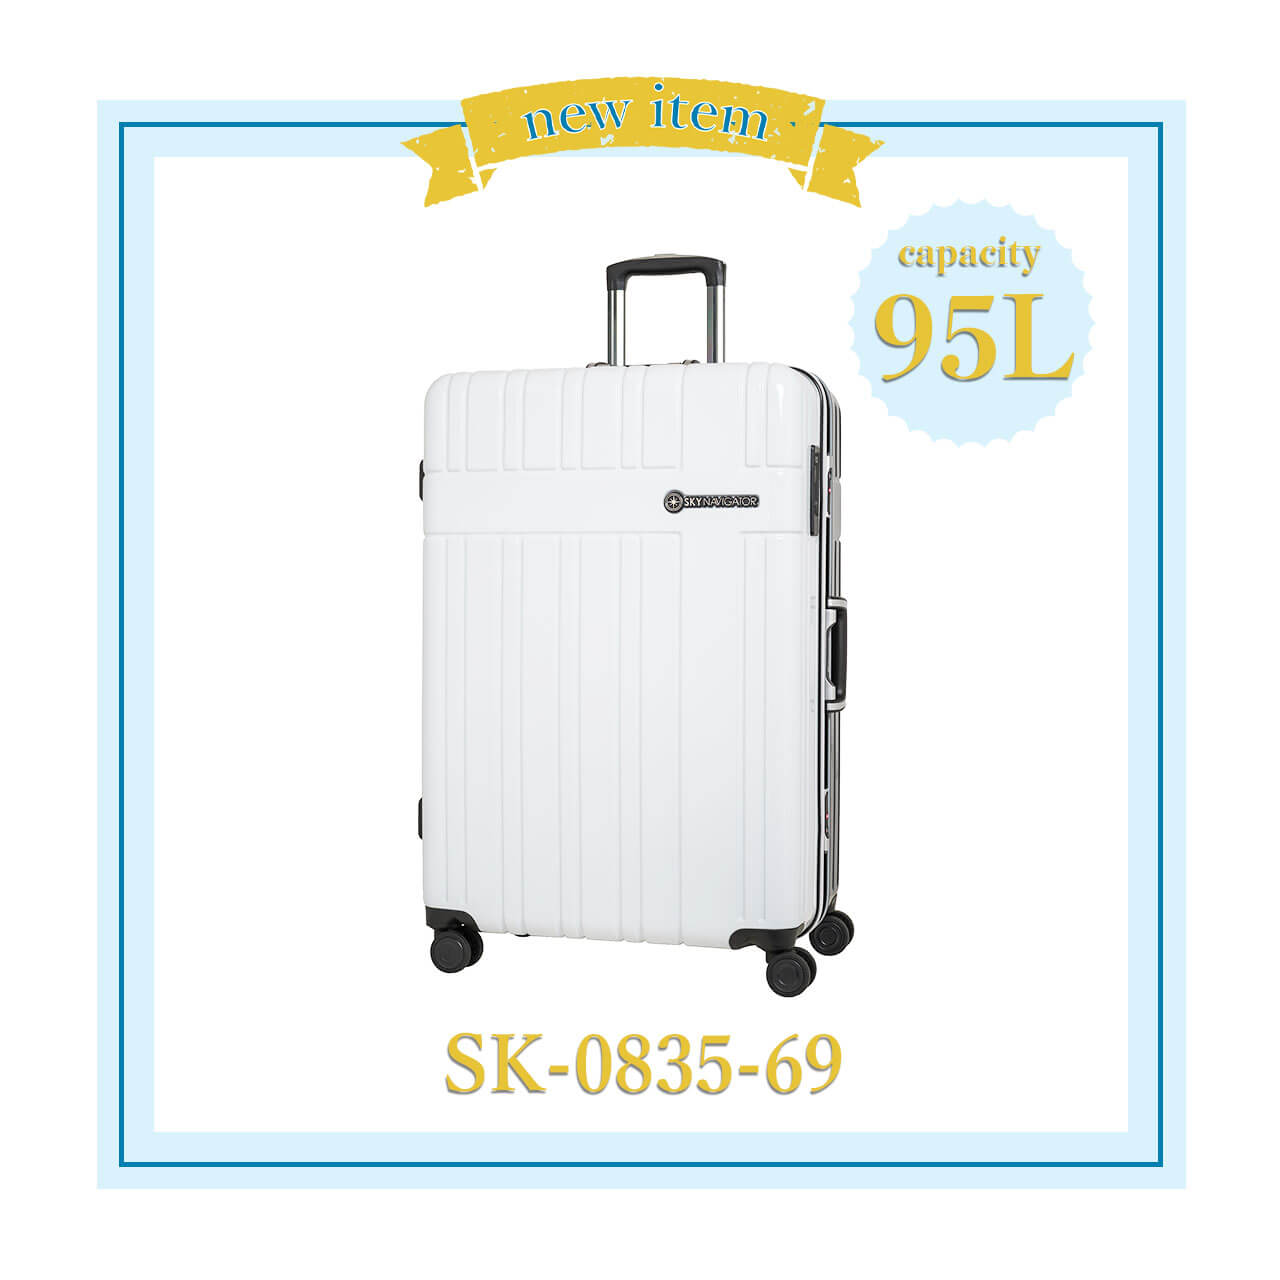 SKYNAVIGATORのスーツケース新作・おすすめスーツケースSK-0835-69お知らせ画像